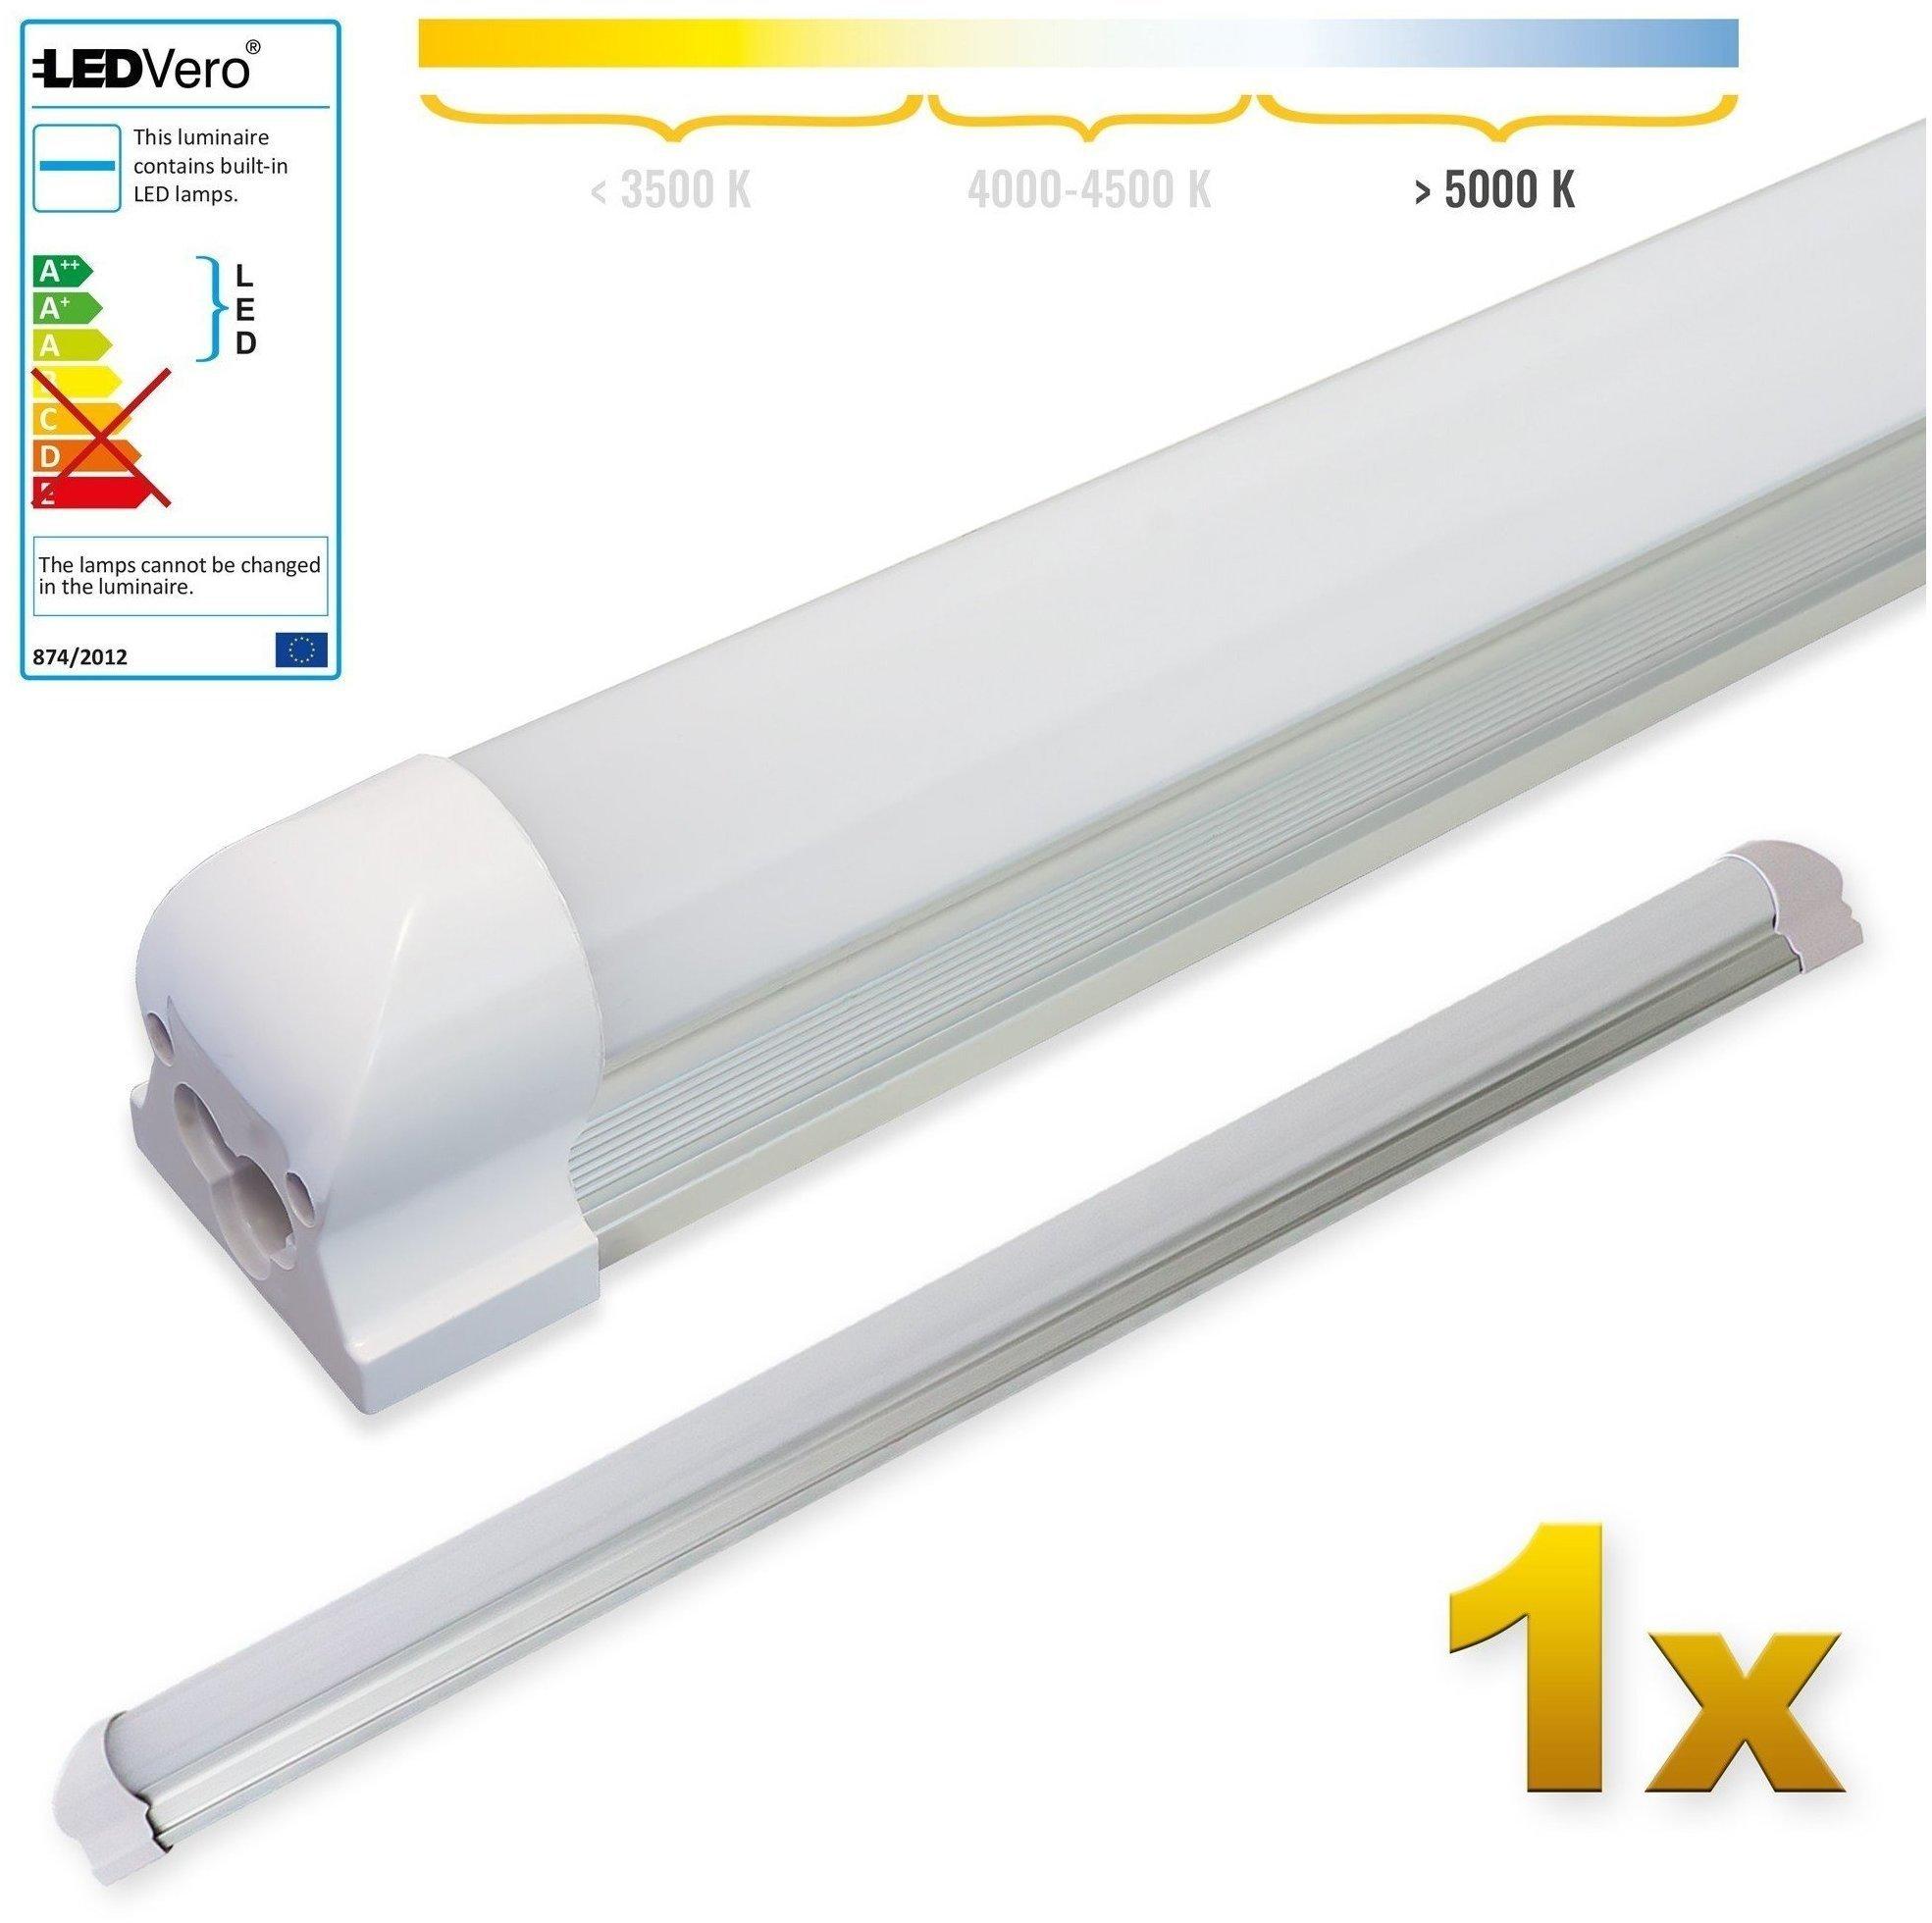 LEDVero 1x SMD LED Röhre 90 cm inklusive Fassung in kaltweiß -  Leuchtstoffröhre T8 G13 Tube milchige Abdeckung - Lichtleiste mit 14 W,  1400lm- montagefertig Test TOP Angebote ab 5,79 € (März 2023)